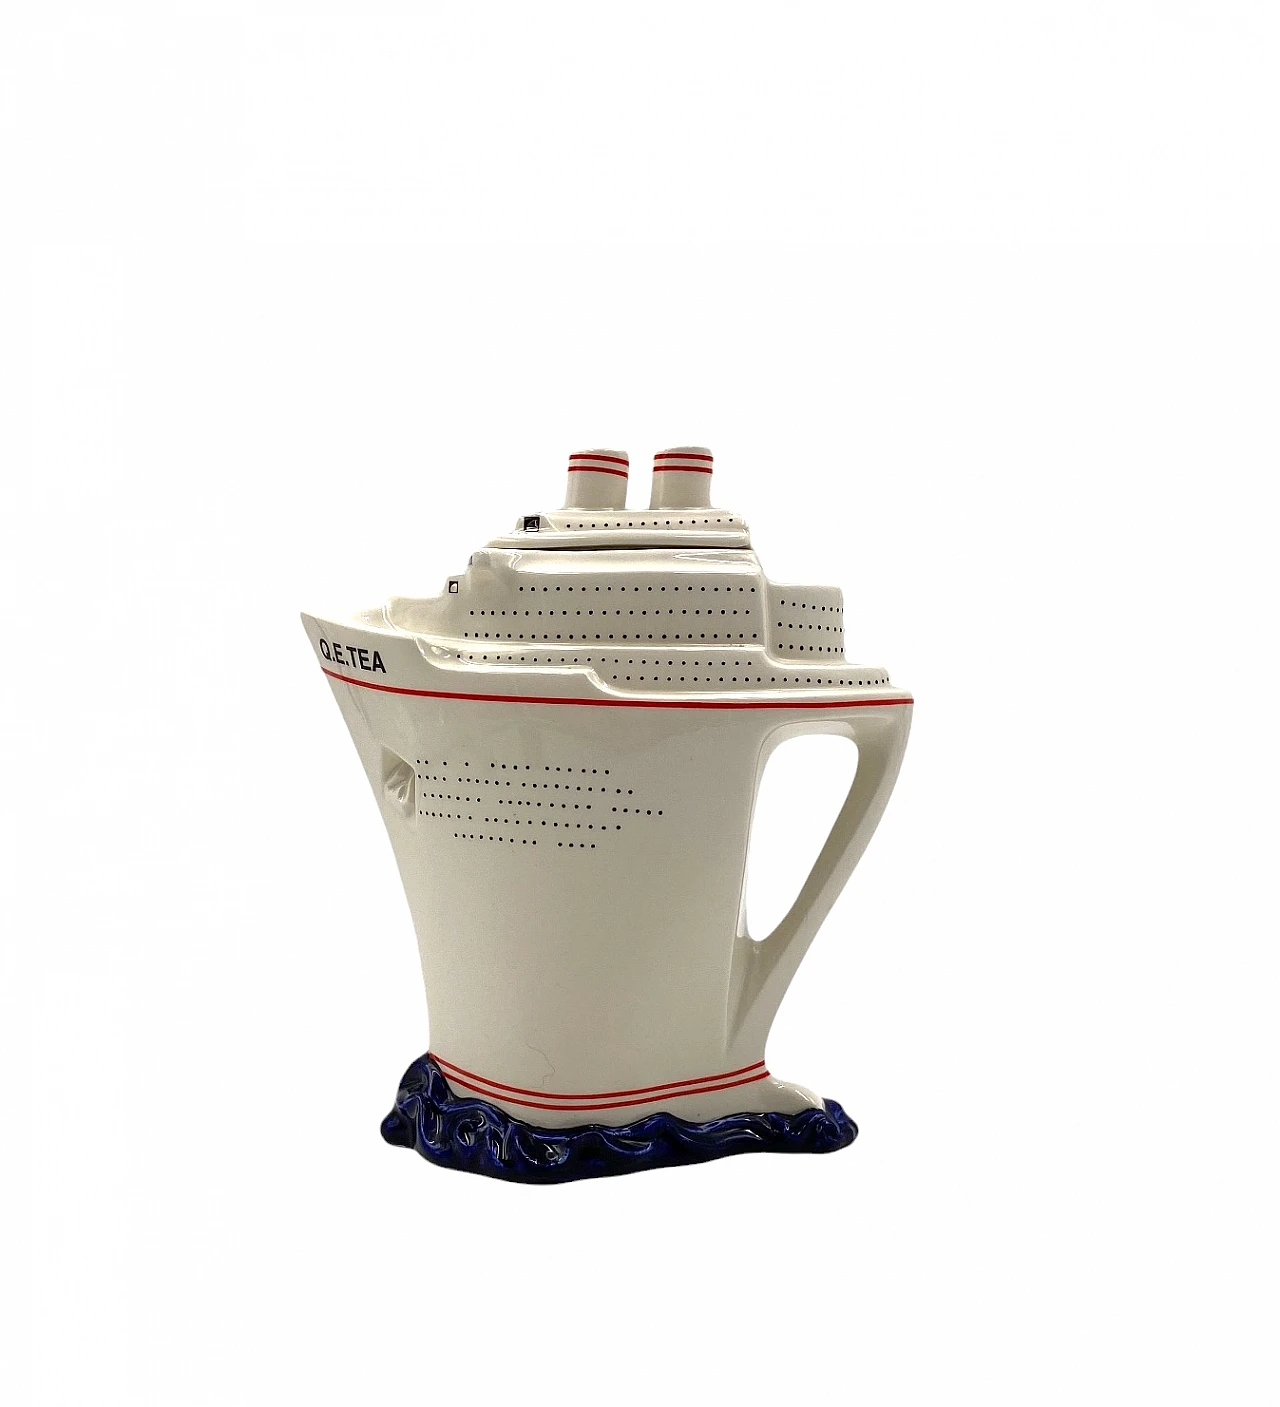 Queen Elizabeth II cruise ship teapot by Paul Cardew 9